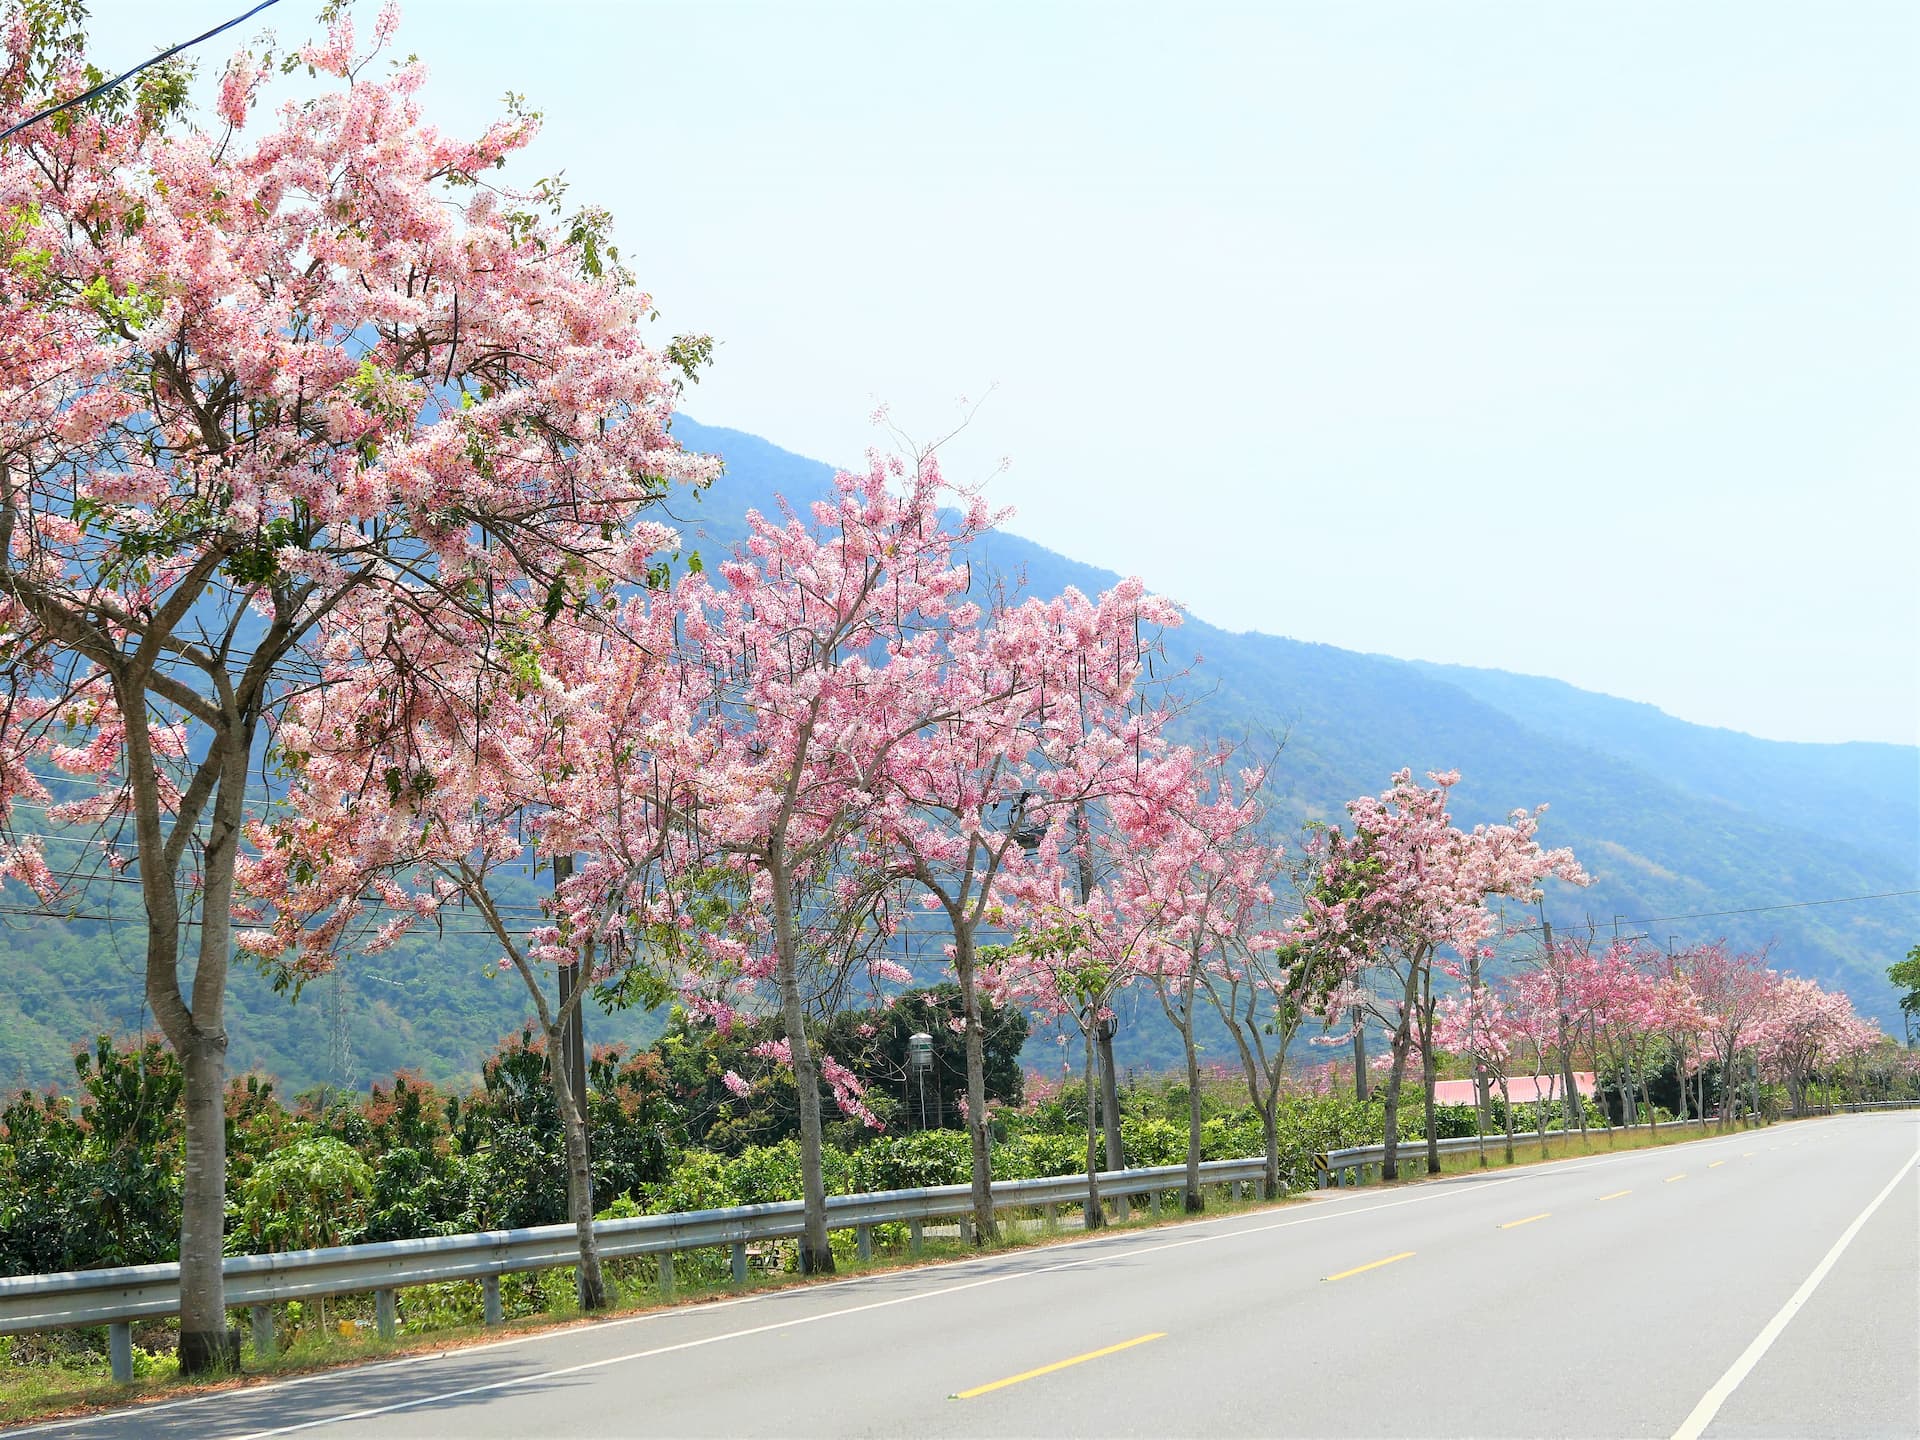 台28、台27甲兩旁一片粉紅襯著山林的青綠，微風吹過時花瓣灑落，體驗名符其實的「桃紅陣雨樹」之美！